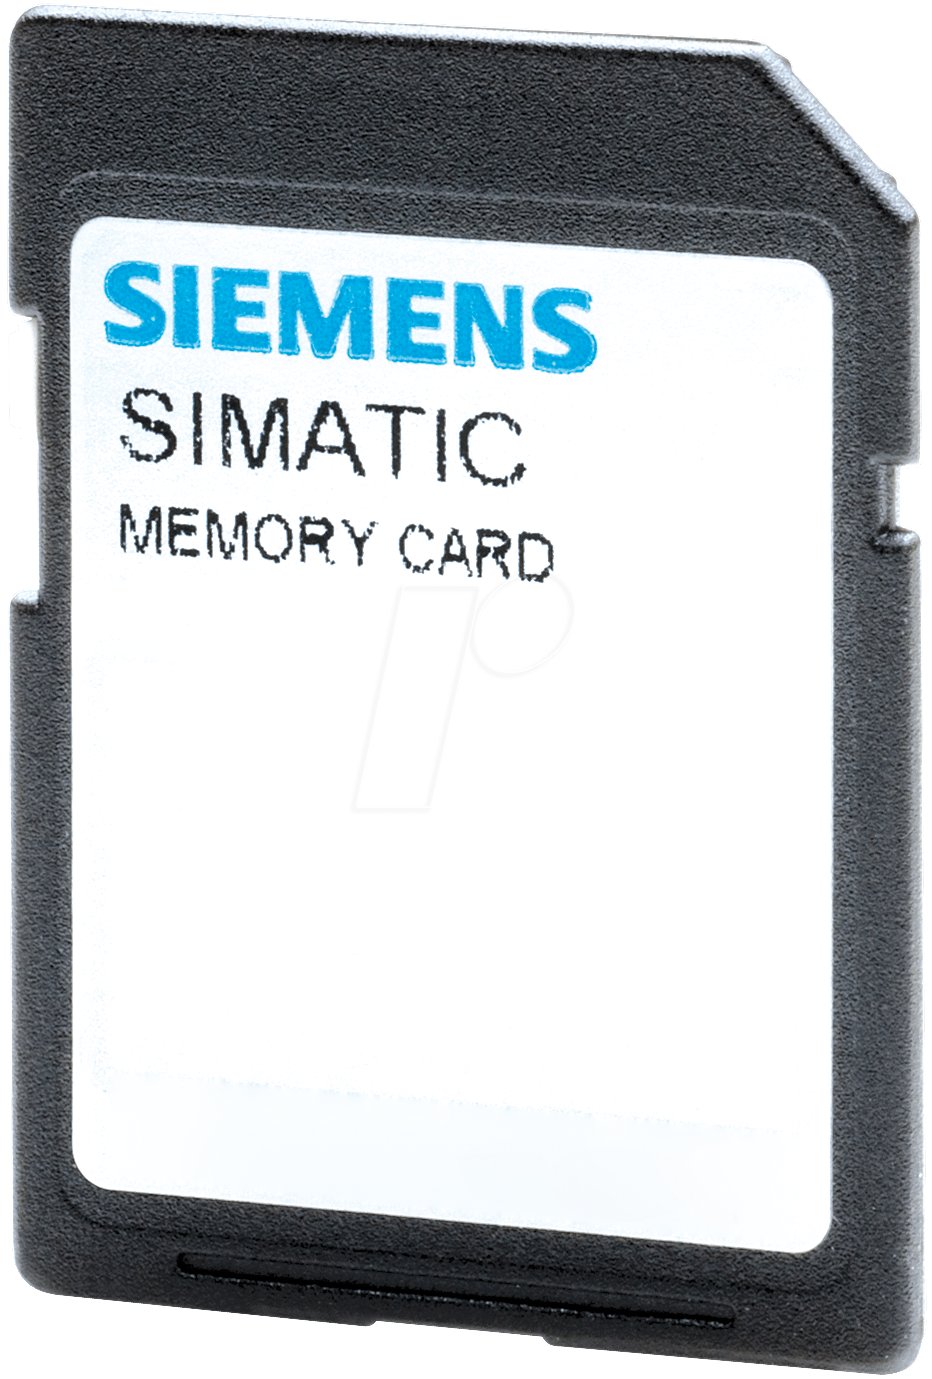 SPS-Speichermodul SIMATIC S7 Memory Card 6ES7954-8LC03-0AA0 (6ES7954-8LC03-0AA0)